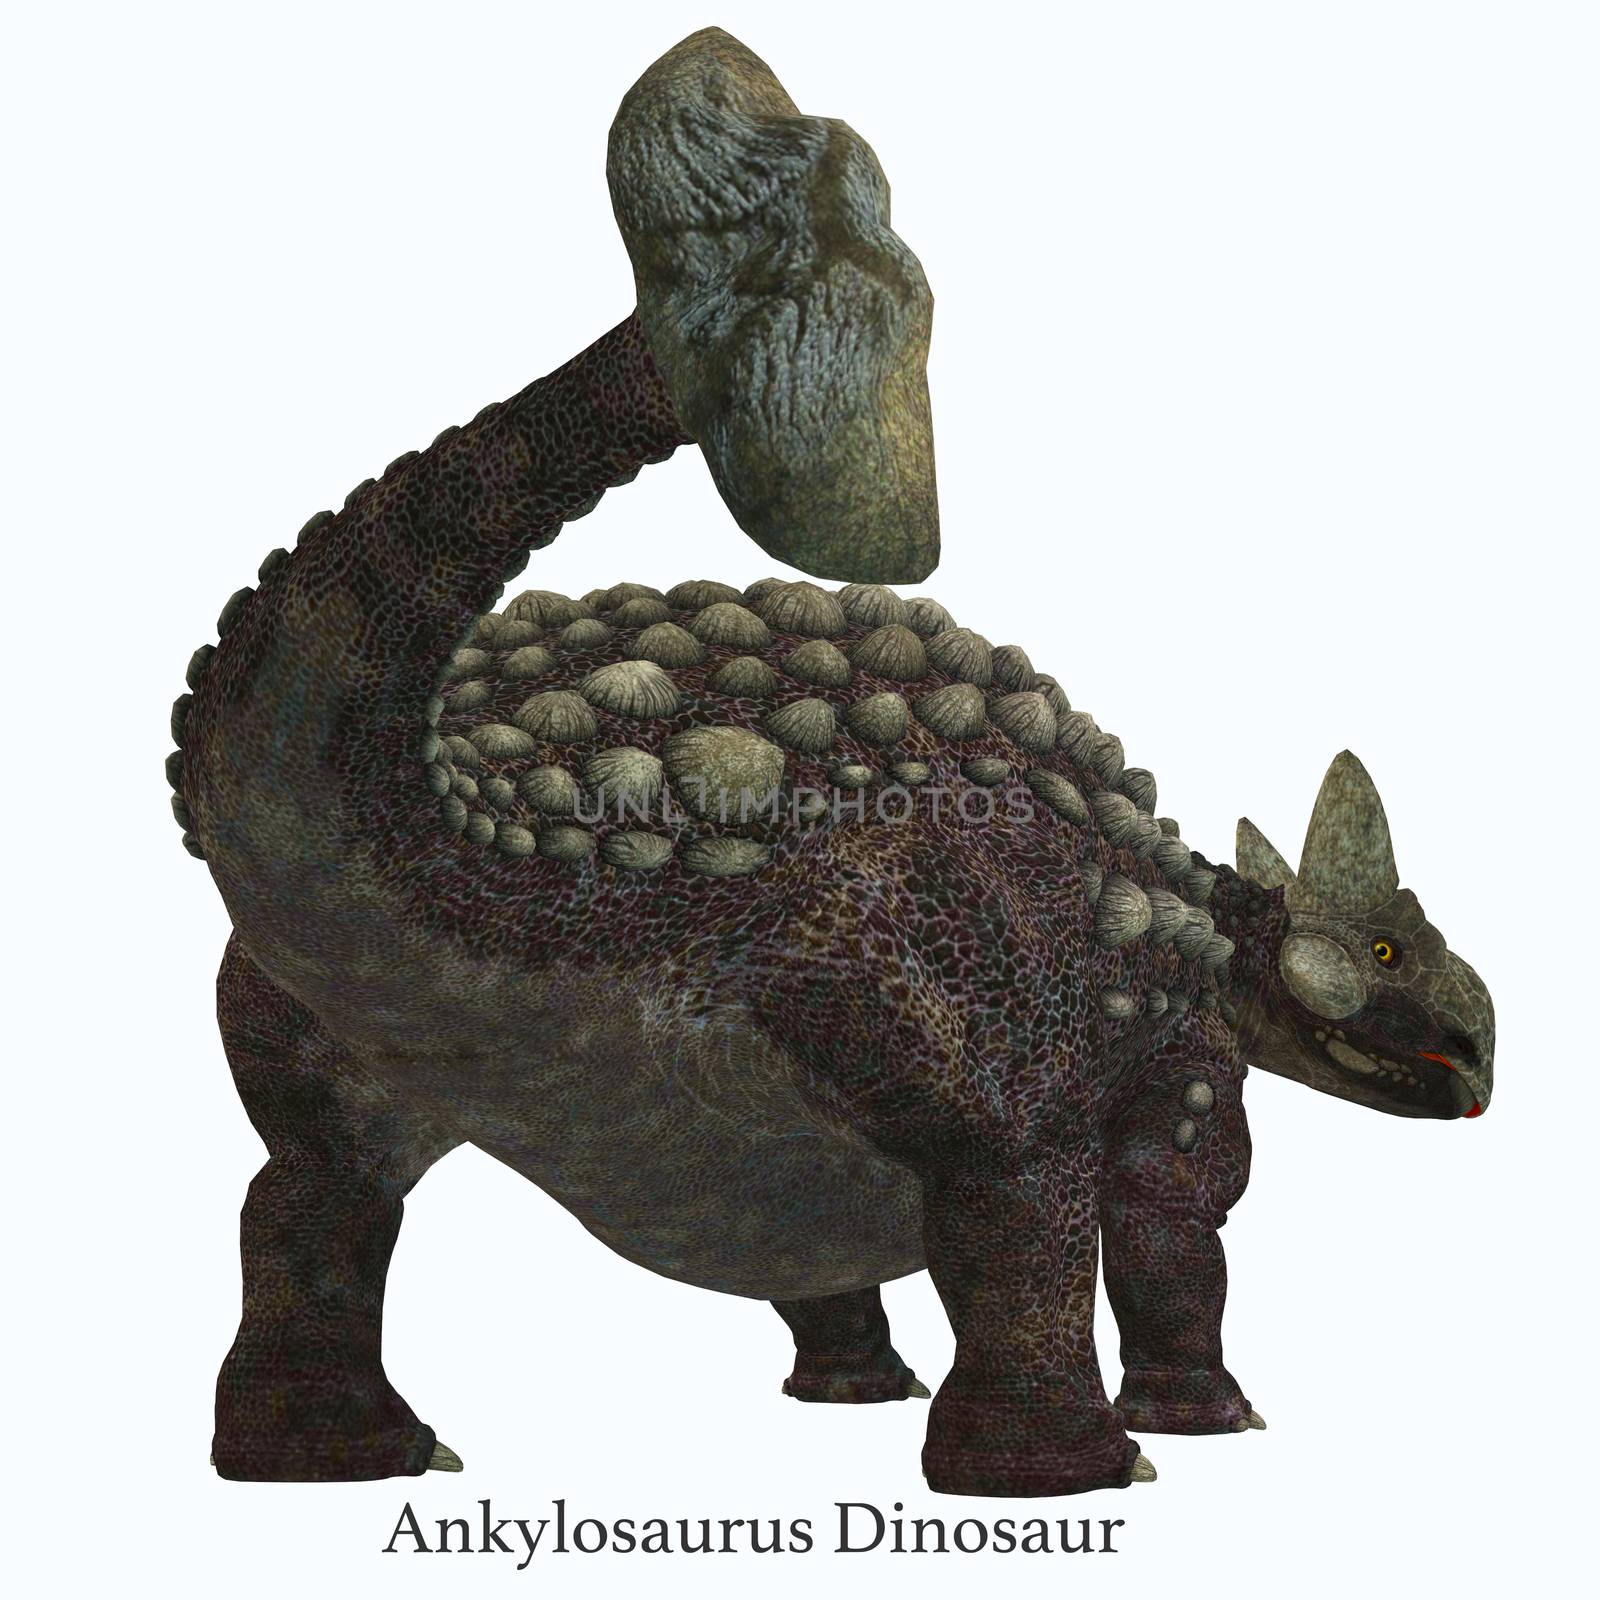 Ankylosaurus Dinosaur Tail with Font by Catmando